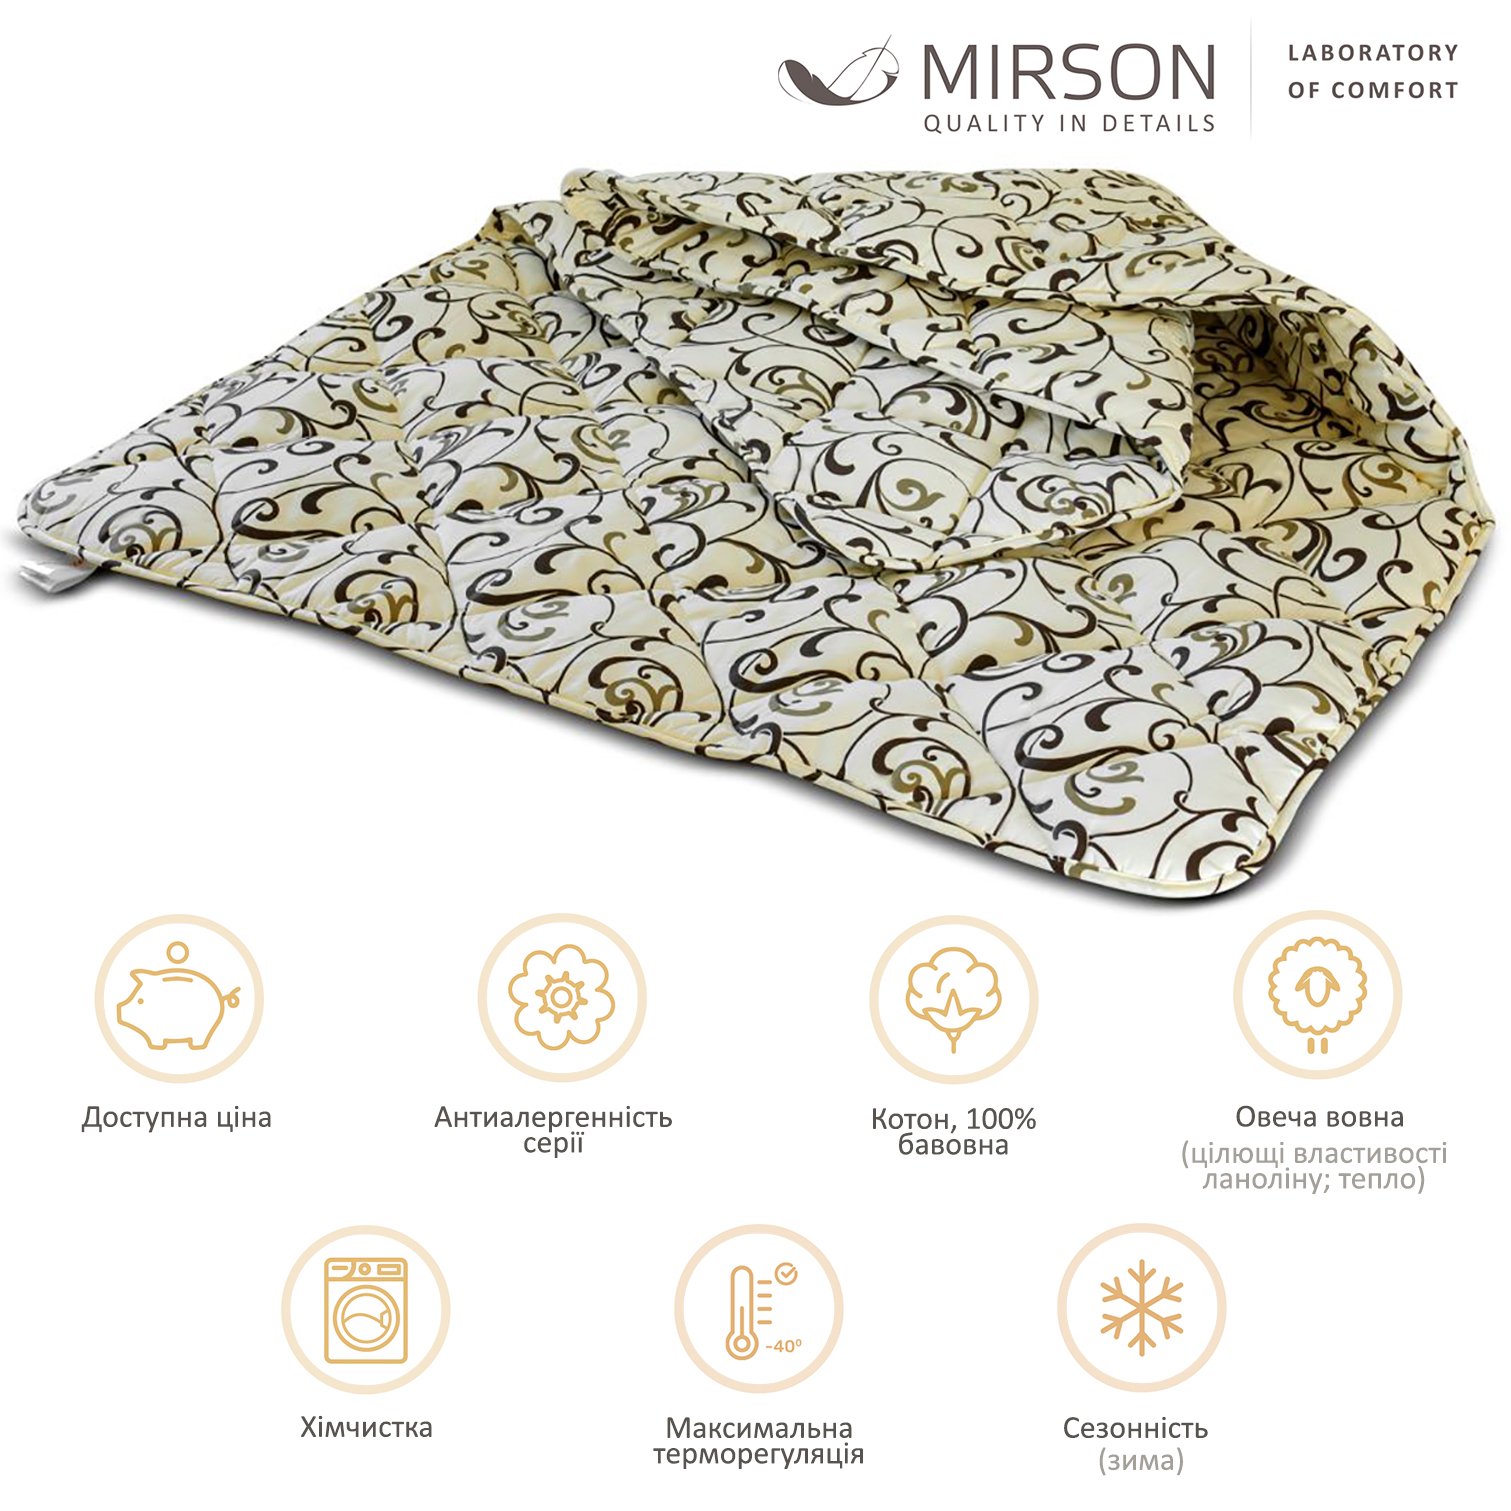 Одеяло шерстяное MirSon №018, зимнее, 140x205 см, бежевое с узором - фото 4